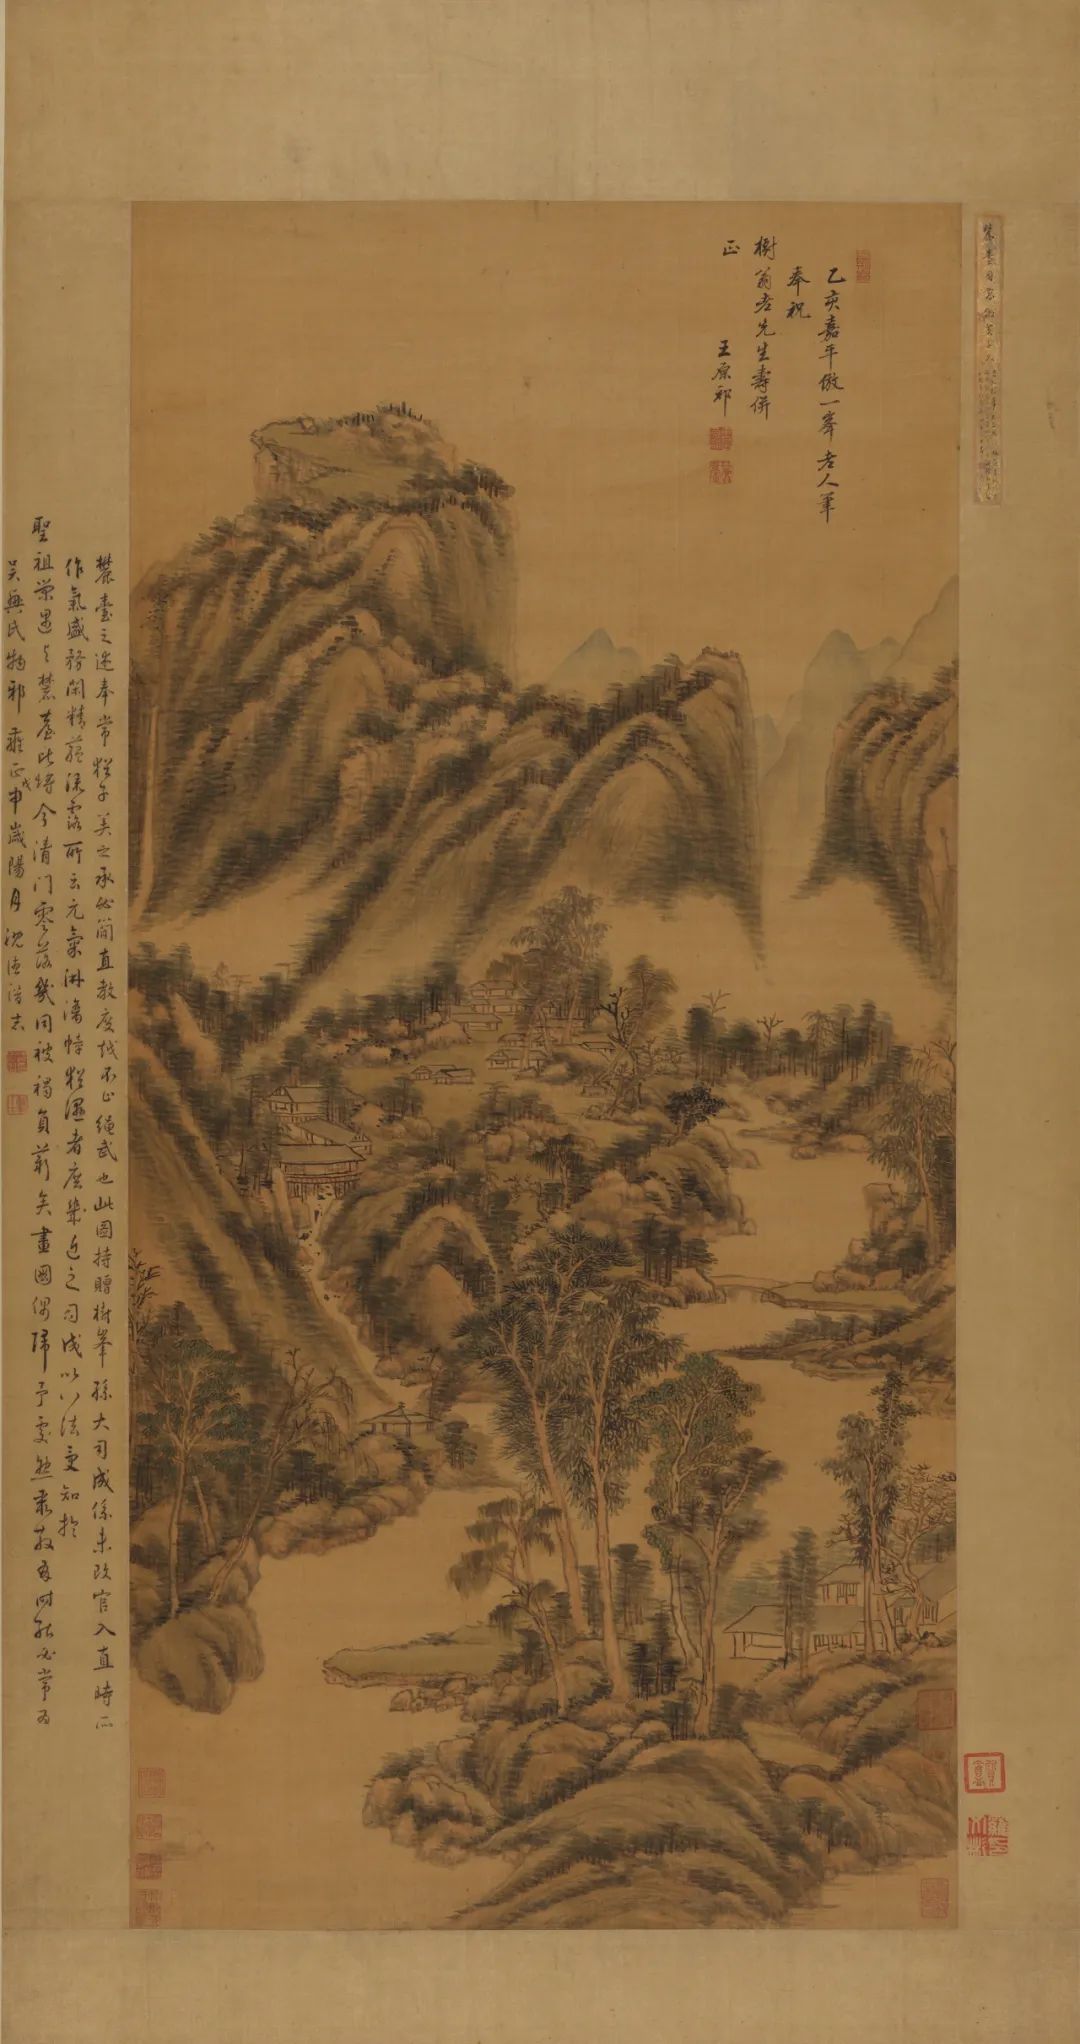 Qing Dynasty Wang Yuanqi "Imitating Huang Gong Wang Landscape"